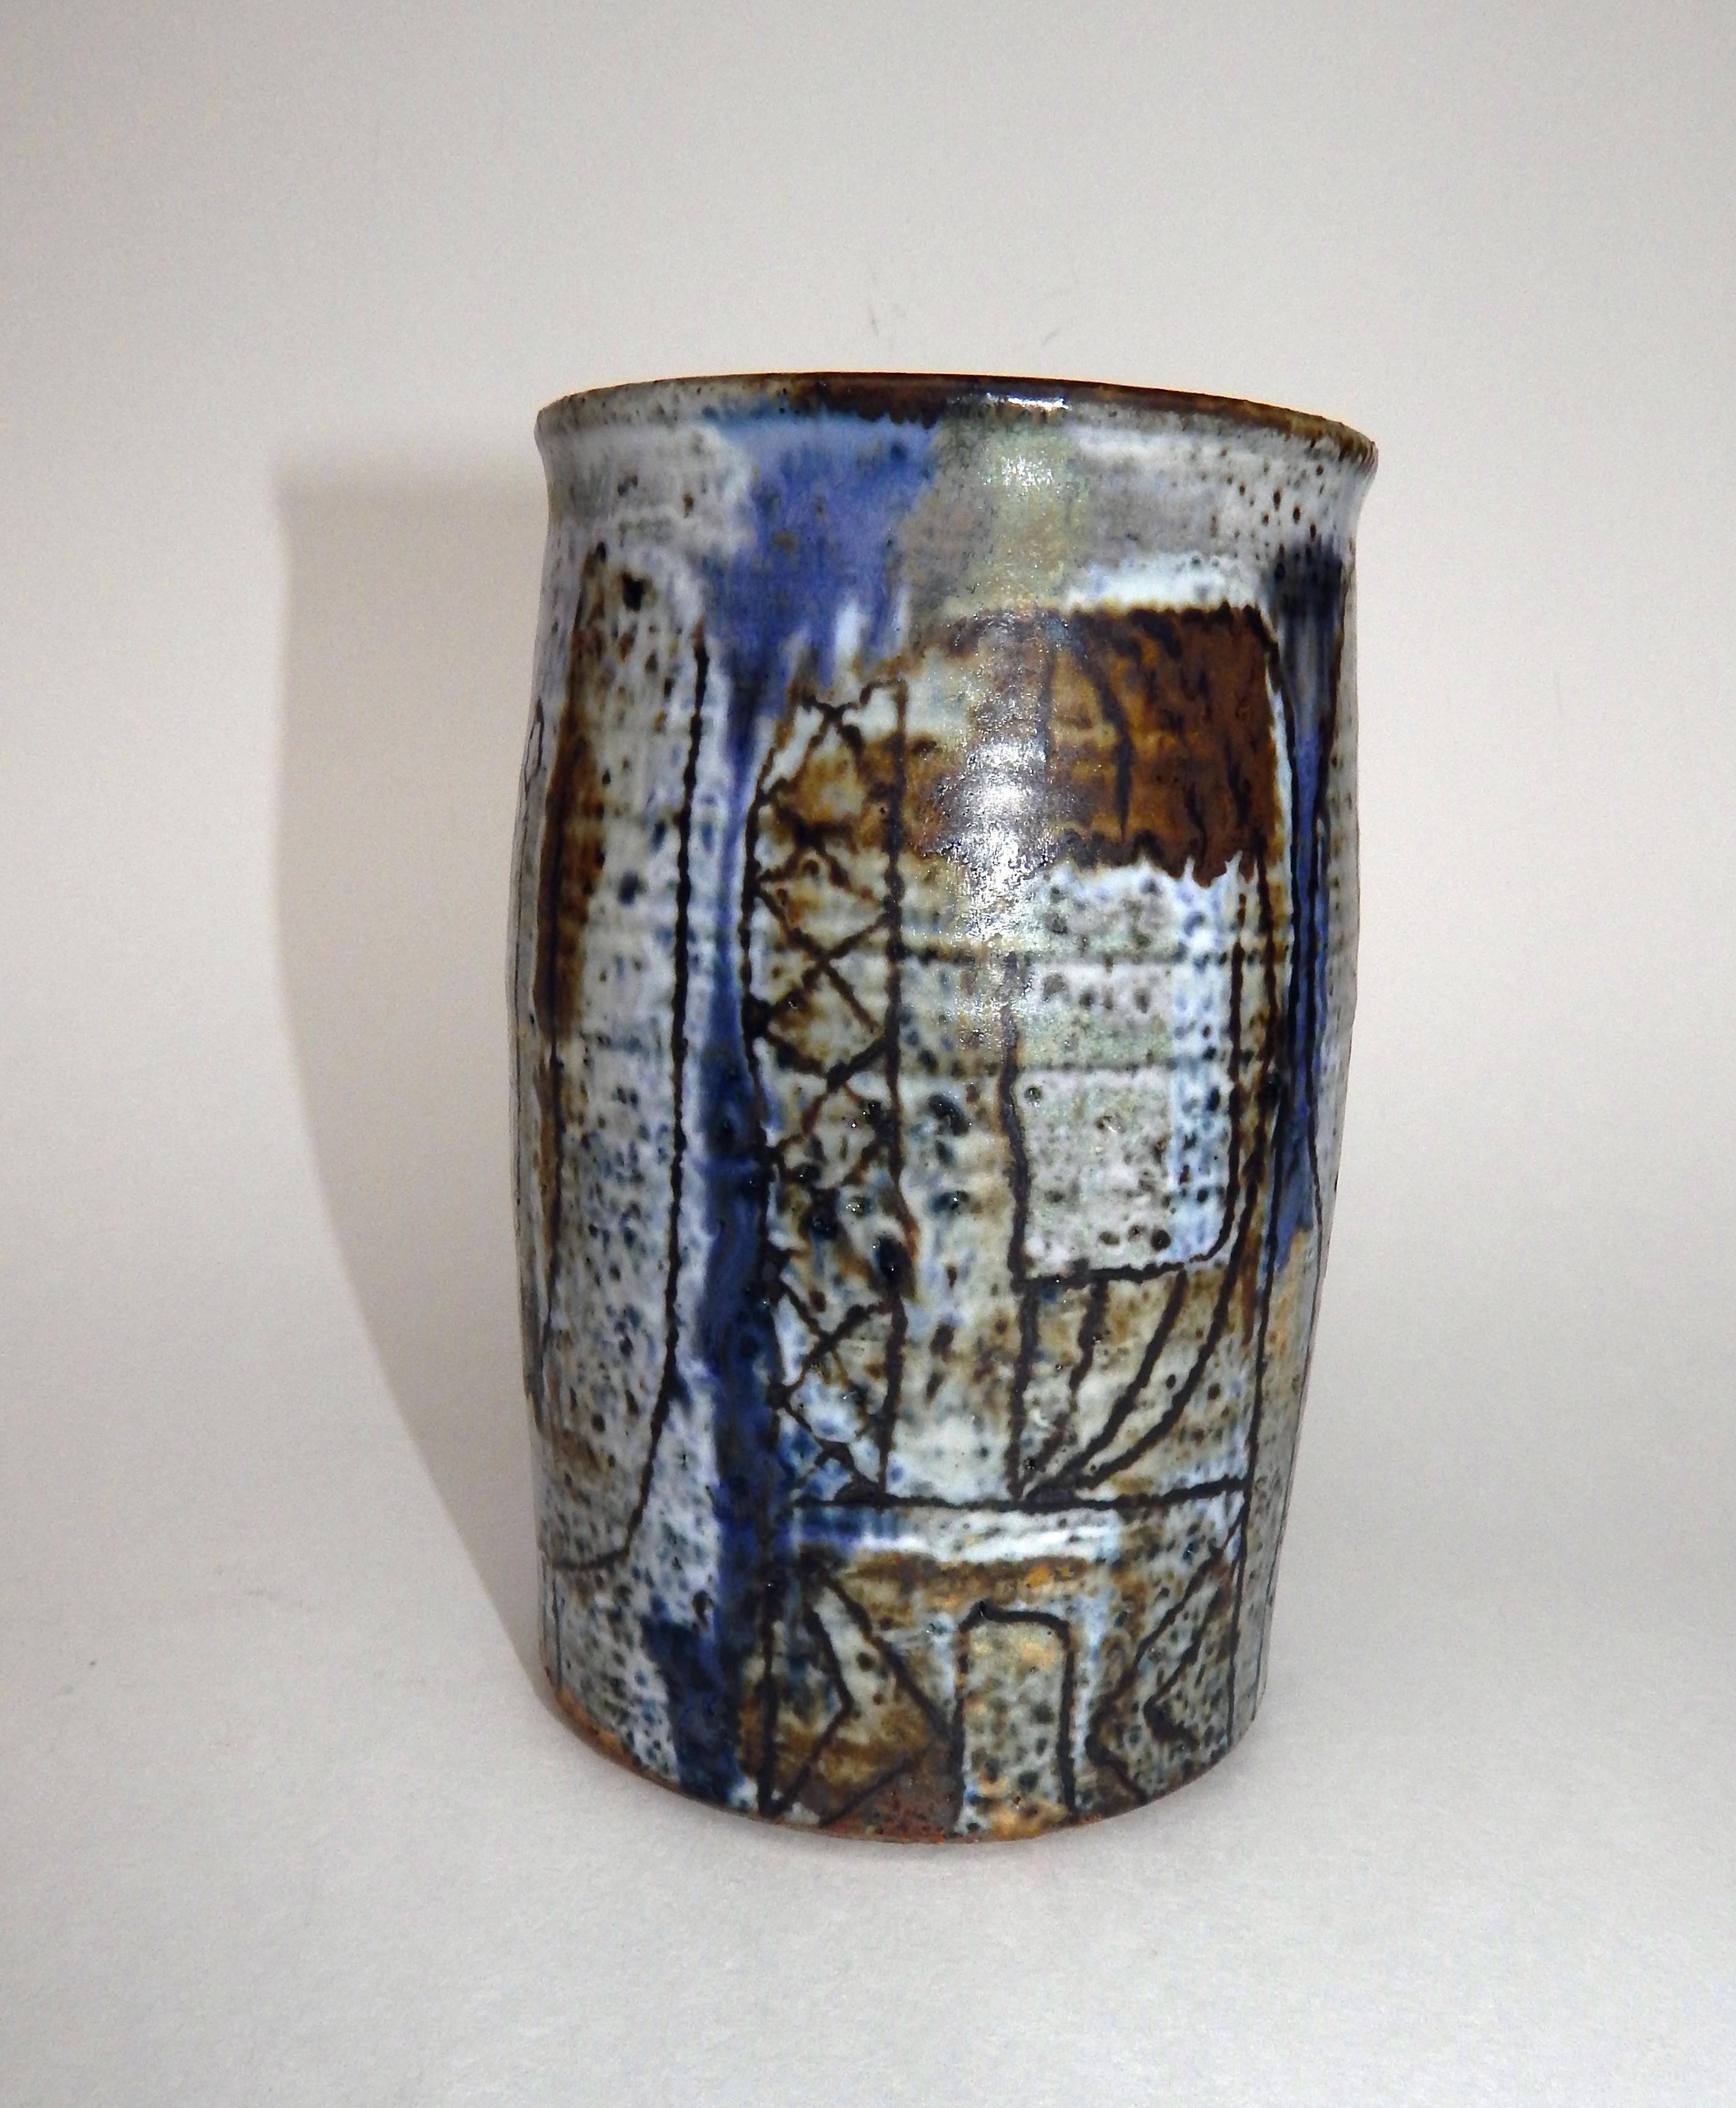 Vase en poterie de studio à motif de sgraffites abstraits de Louis Raynor (1917-1999).
Signature du monogramme sur la partie inférieure.
Mesures : 5 3/4